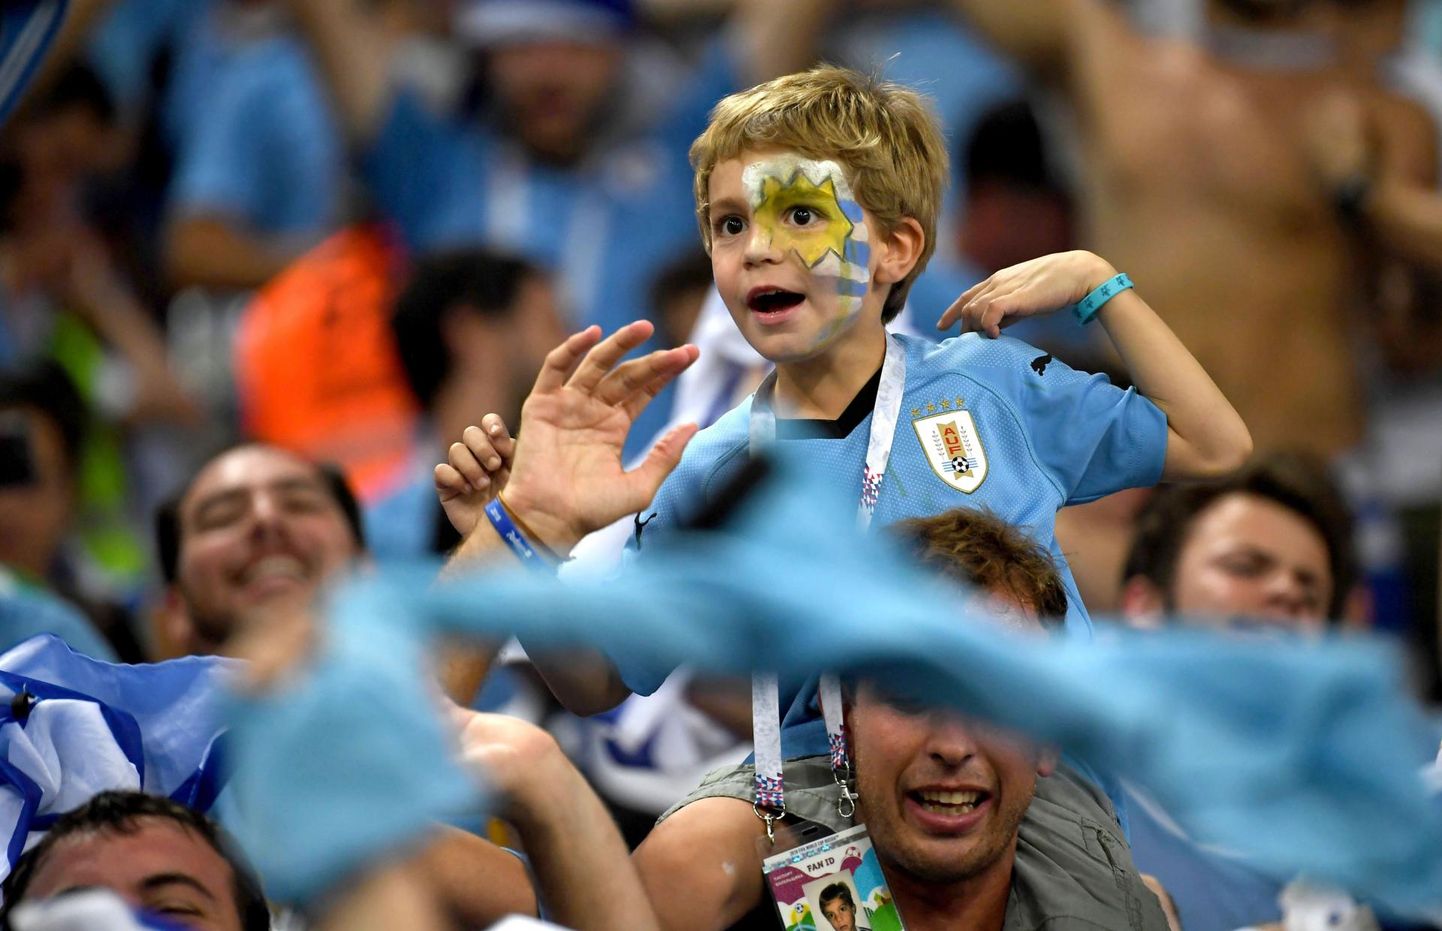 3,5 miljoni elanikuga Uruguay on maailmameistrite seas väikseim. Kuigi eelmine tiitel võideti 1950. aastal, on riigi jalgpalli kultuurikiht sedavõrd rammus, et lubab tiitlit püüda ka praegu. 2010 jõuti poolfinaali, täna sihitakse Prantsusmaa vastu sama.